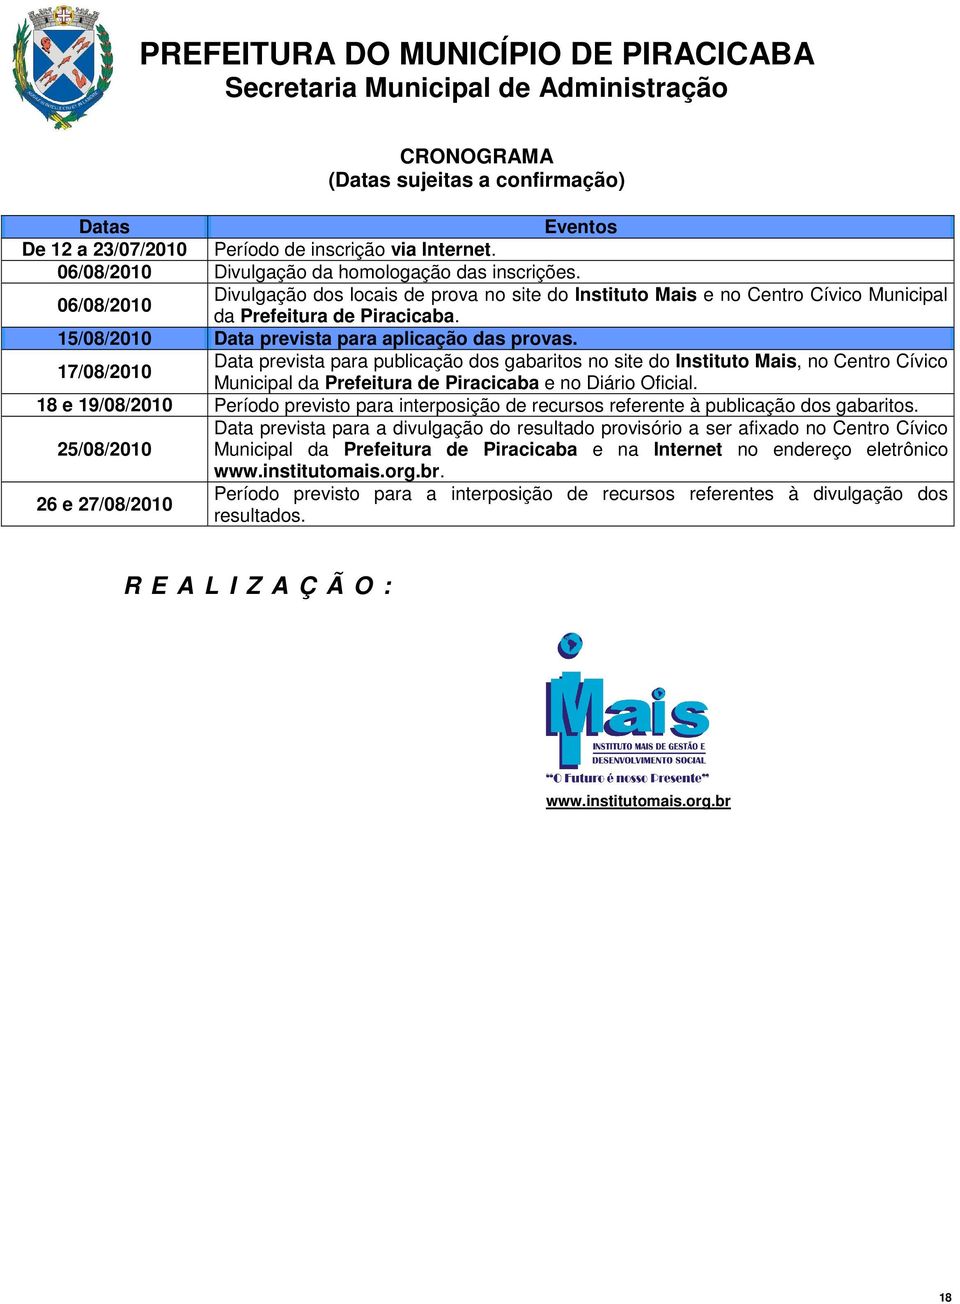 17/08/2010 Data prevista para publicação dos gabaritos no site do Instituto Mais, no Centro Cívico Municipal da Prefeitura de Piracicaba e no Diário Oficial.